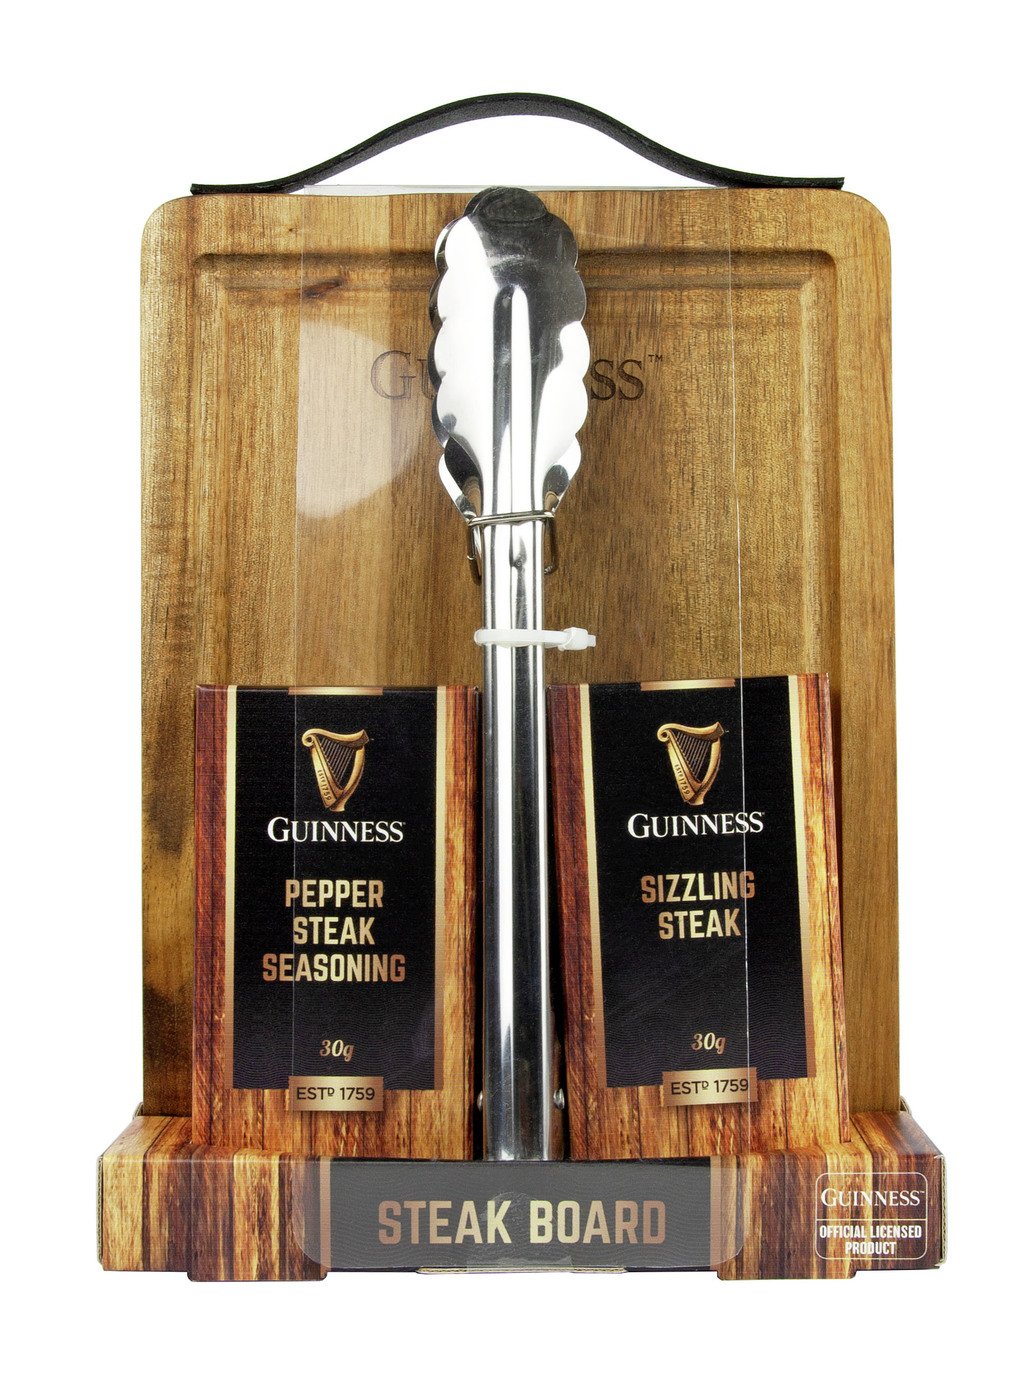 Guinness Steak Board